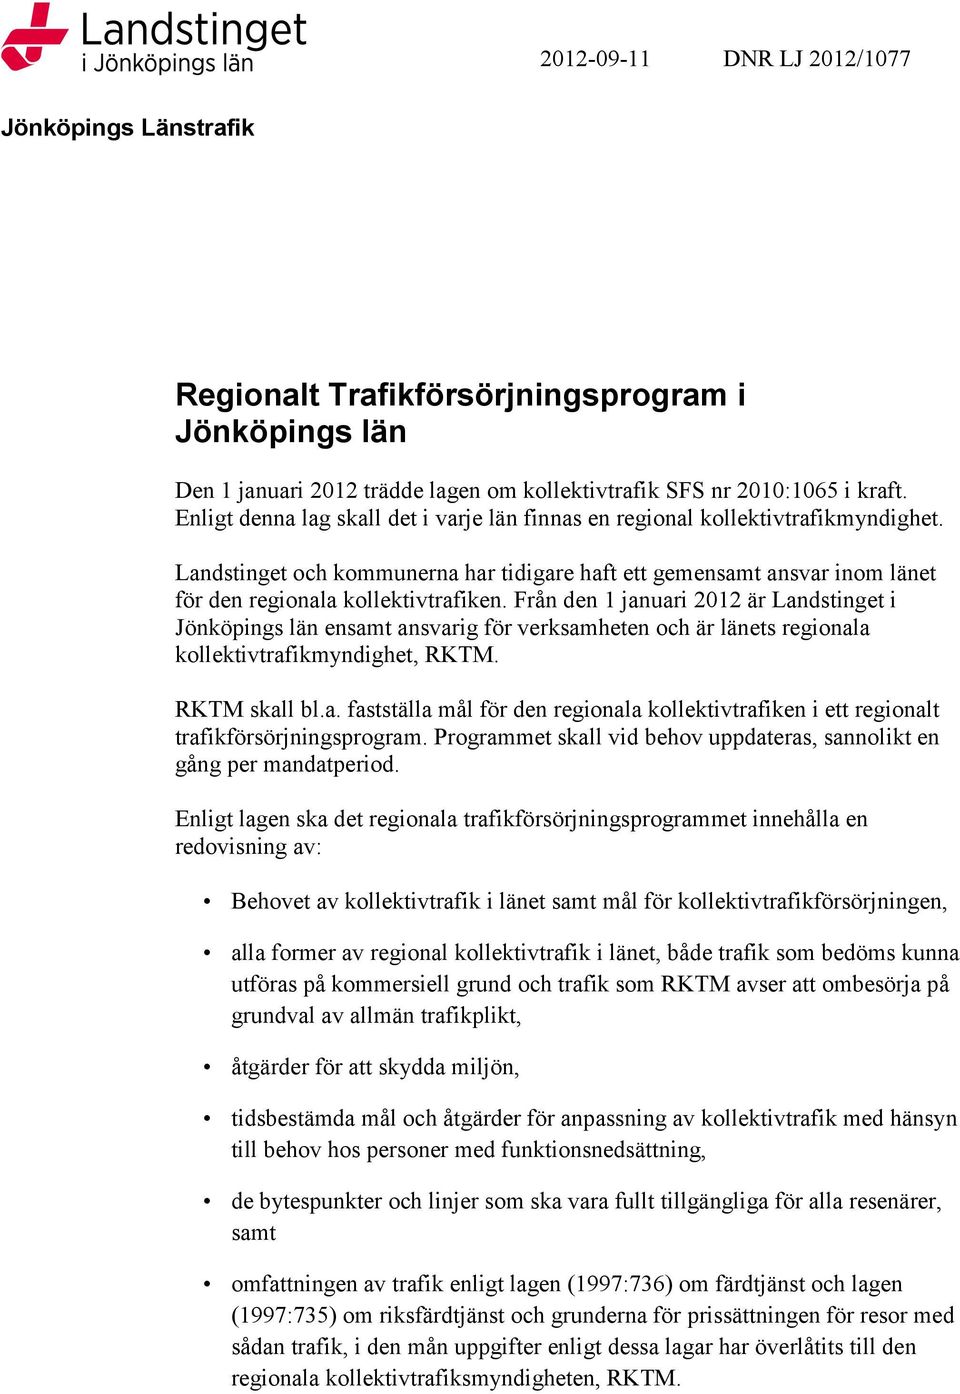 Från den 1 januari 2012 är Landstinget i Jönköpings län ensamt ansvarig för verksamheten och är länets regionala kollektivtrafikmyndighet, RKTM. RKTM skall bl.a. fastställa mål för den regionala kollektivtrafiken i ett regionalt trafikförsörjningsprogram.